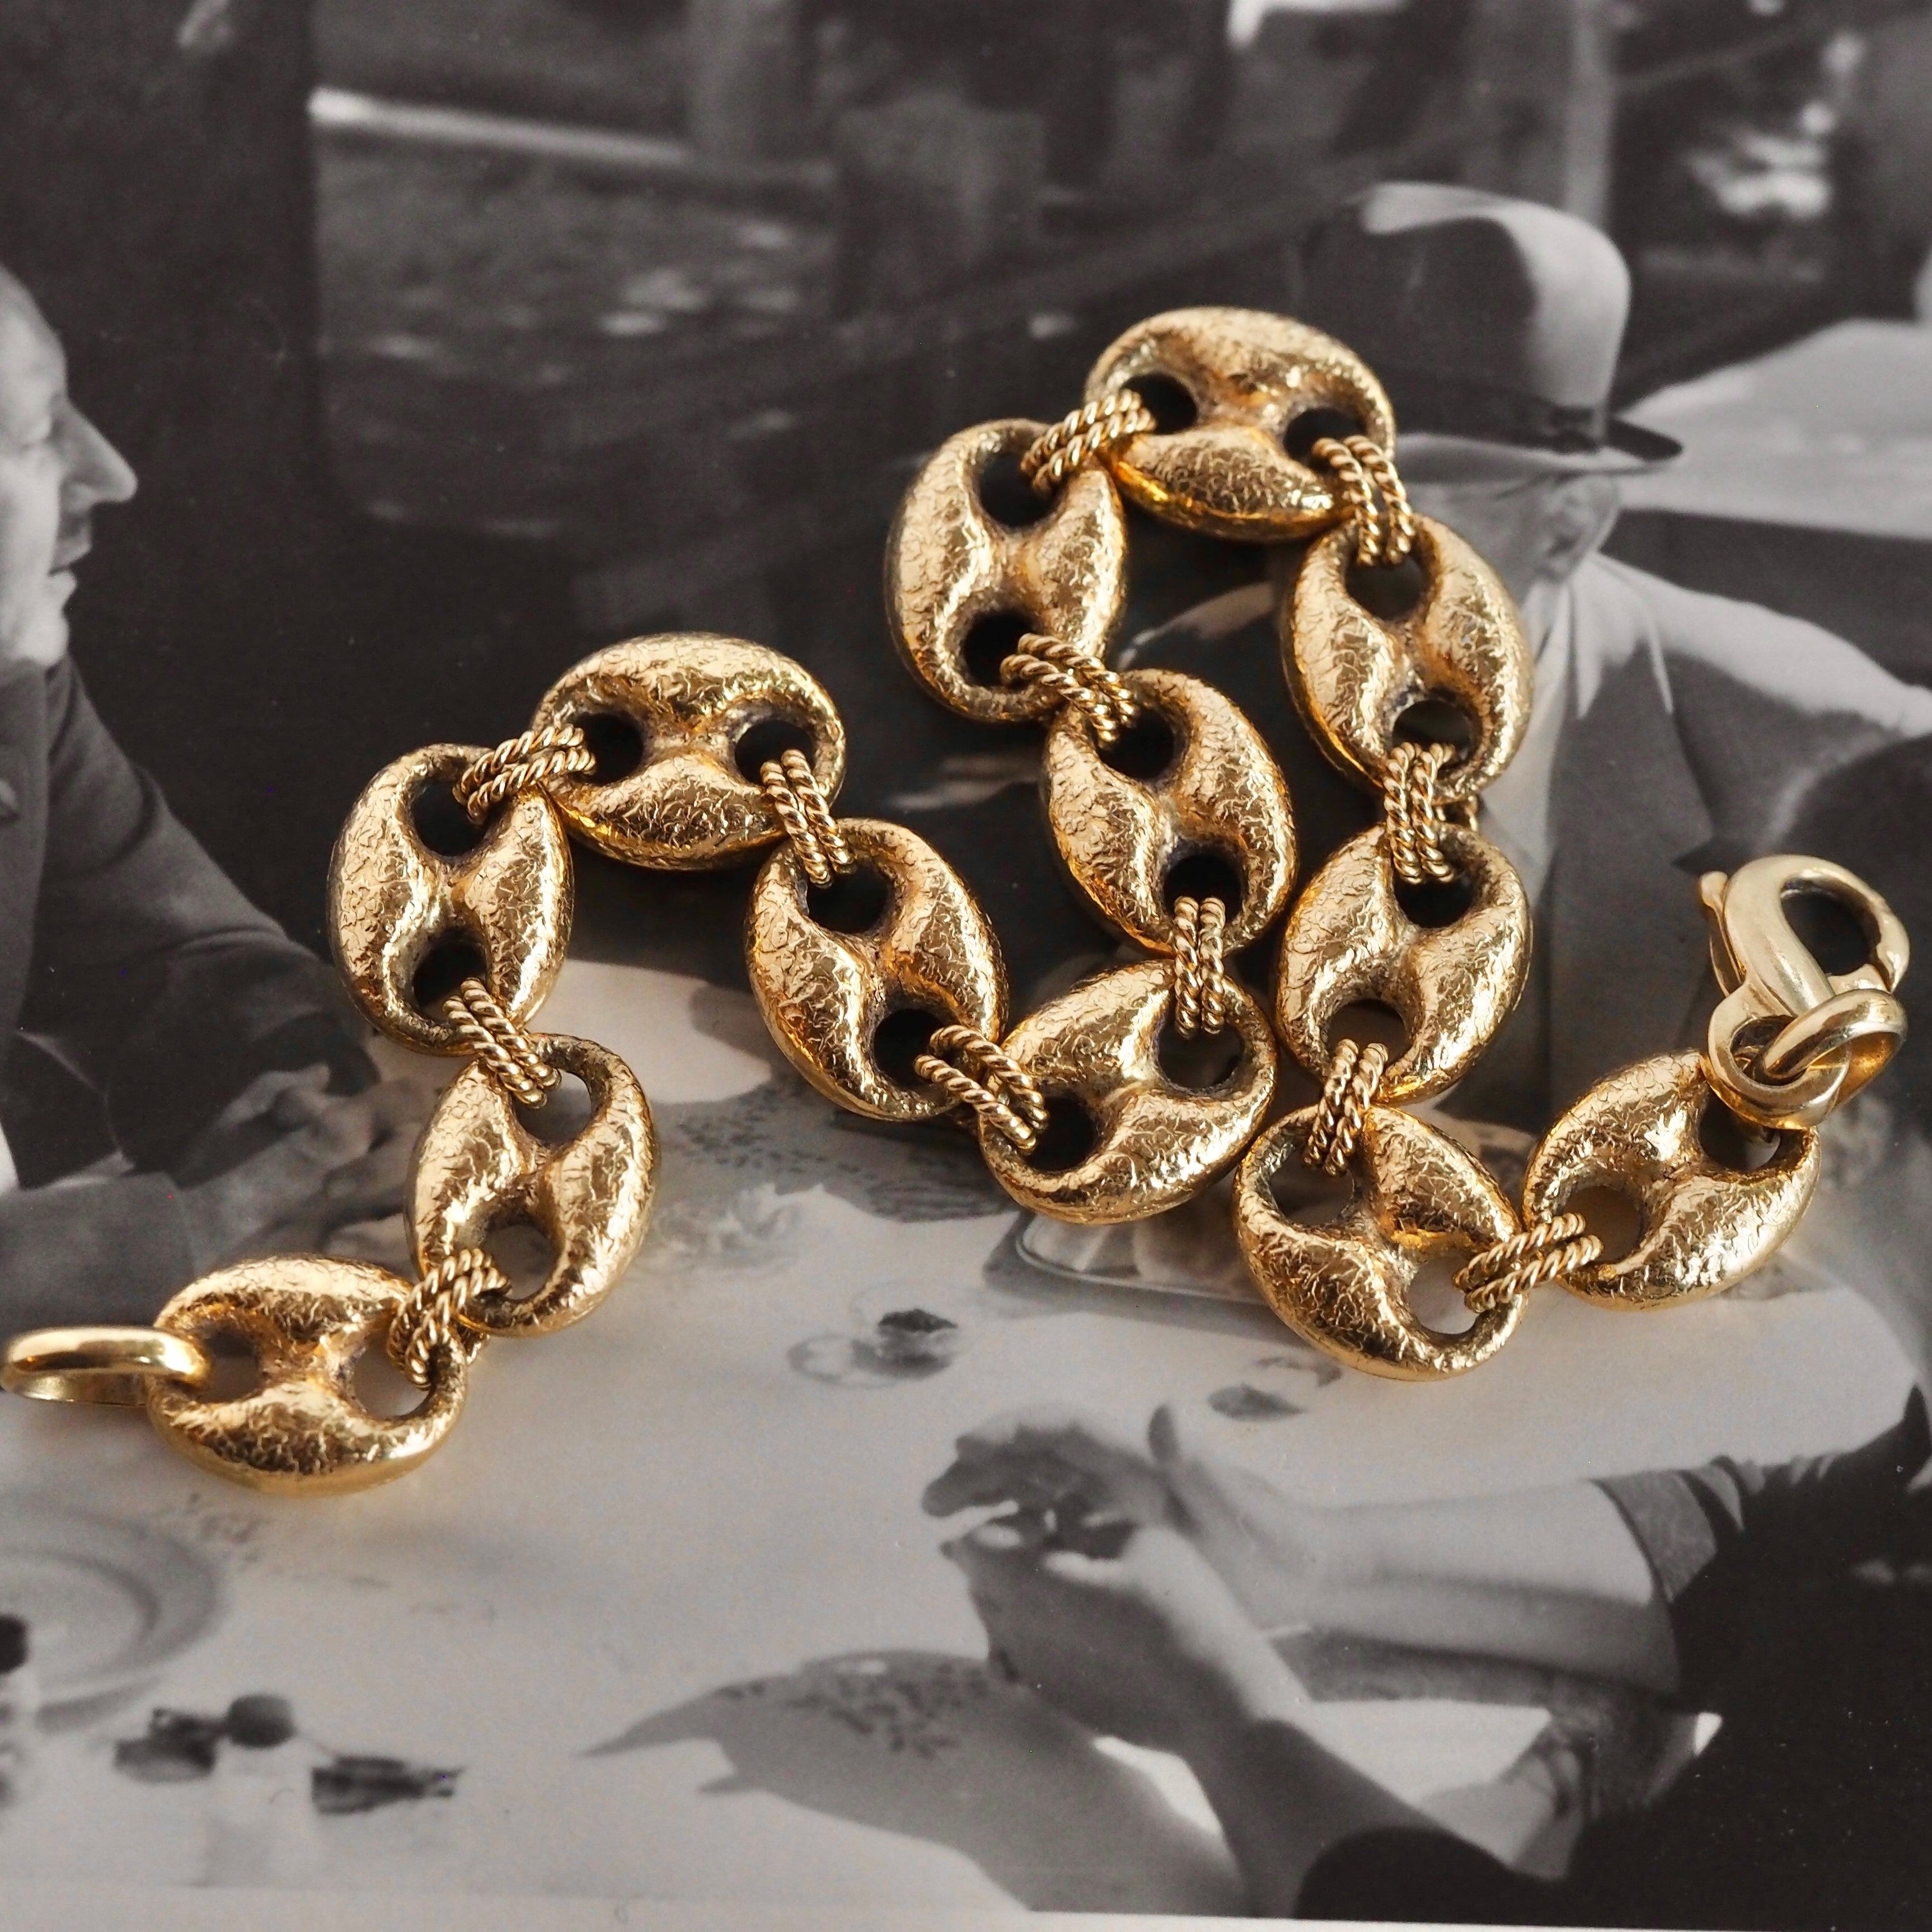 Vintage Portuguese 19k Gold Textured Puffy Mariner Link Bracelet